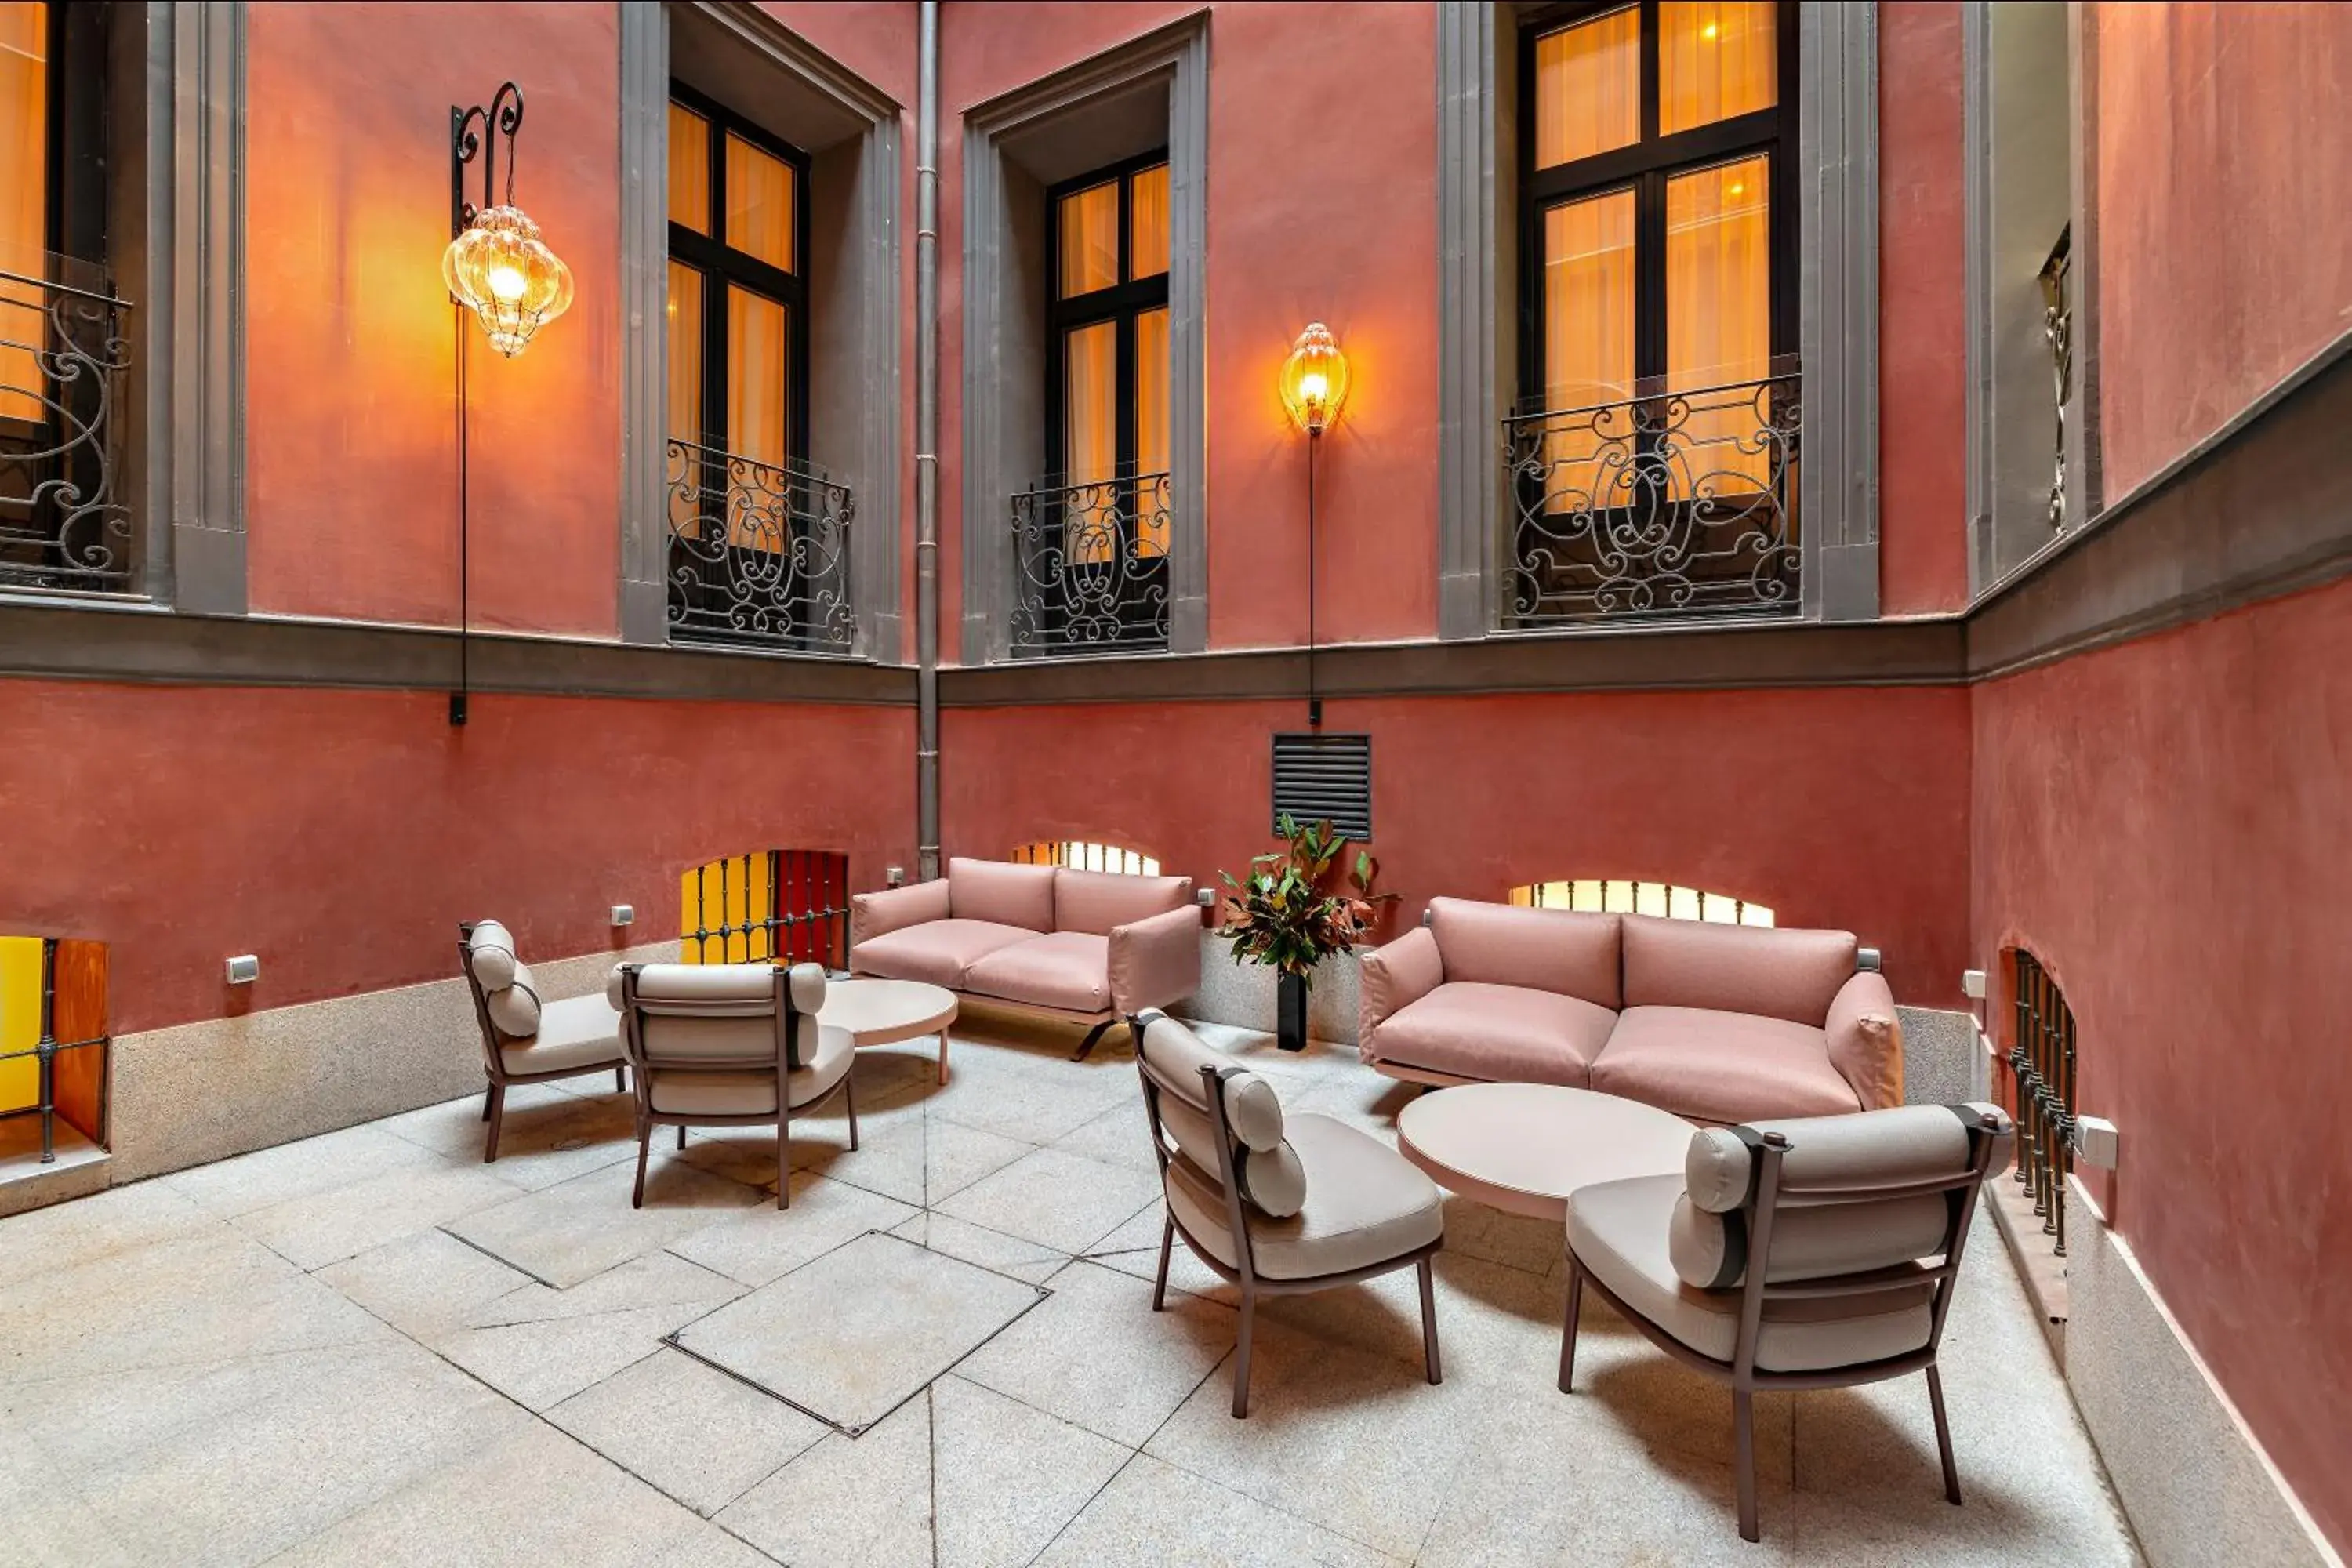 Seating area, Lobby/Reception in CoolRooms Palacio de Atocha